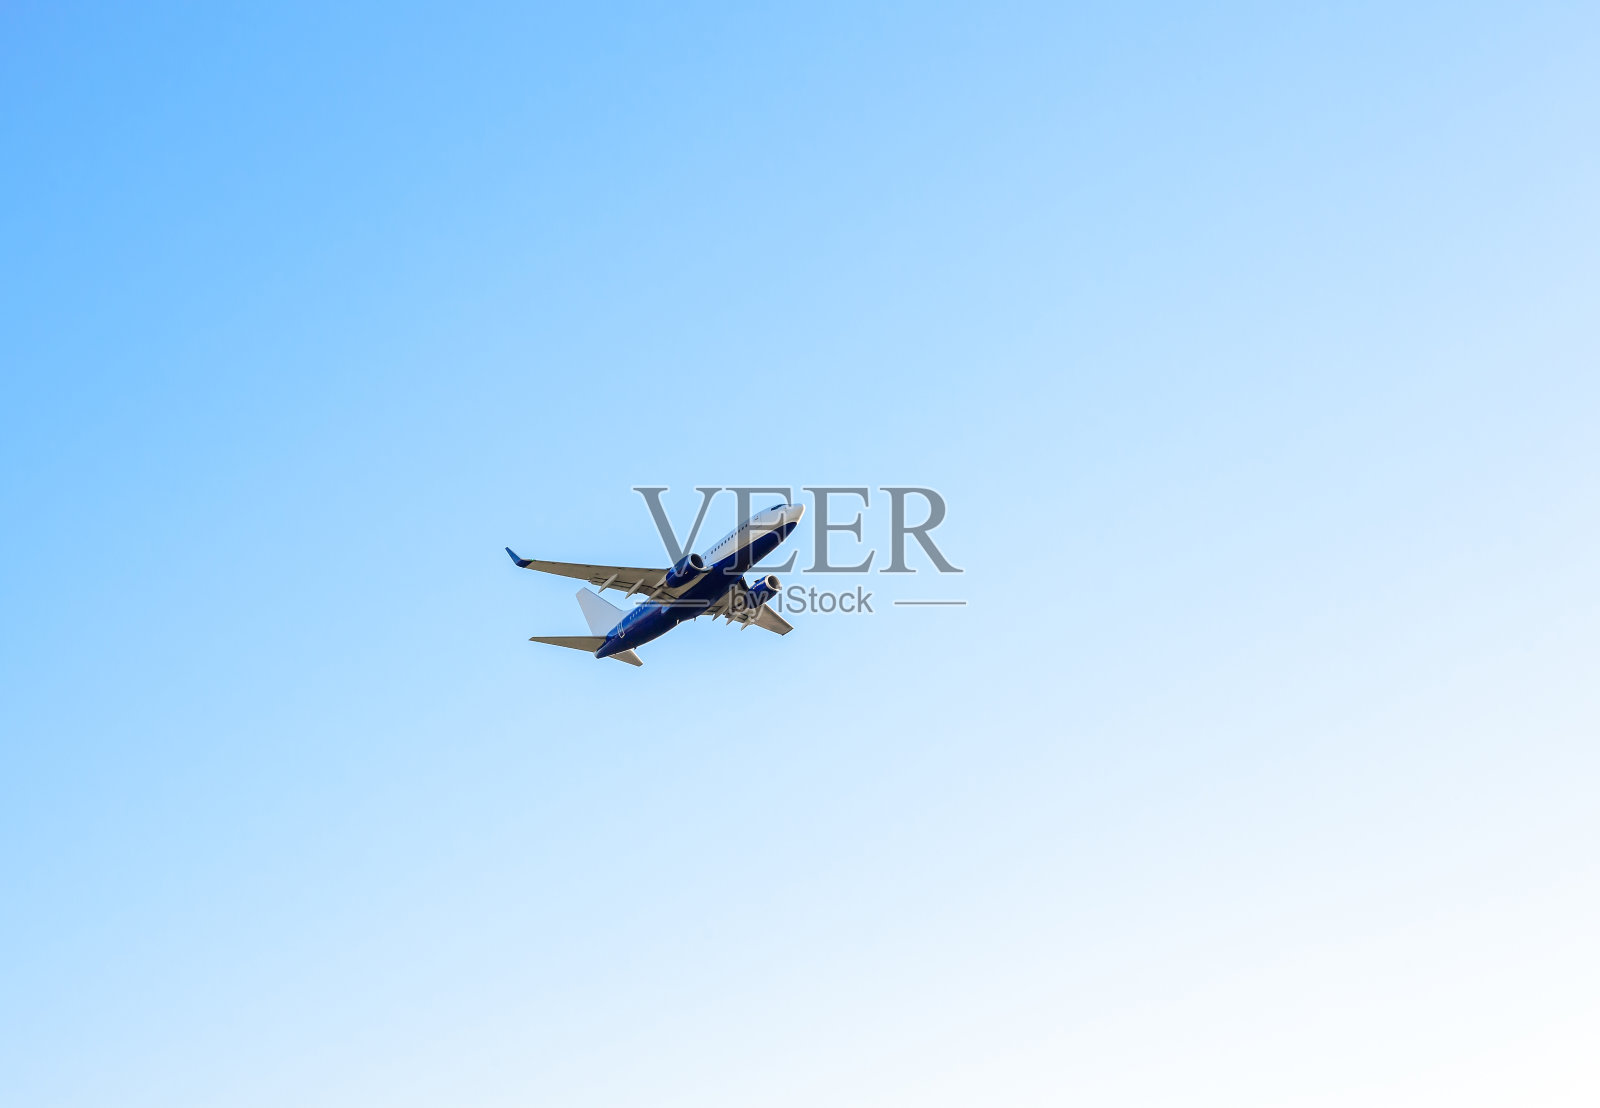 大客机在晴朗的蓝天中飞行飞机高空航行照片摄影图片